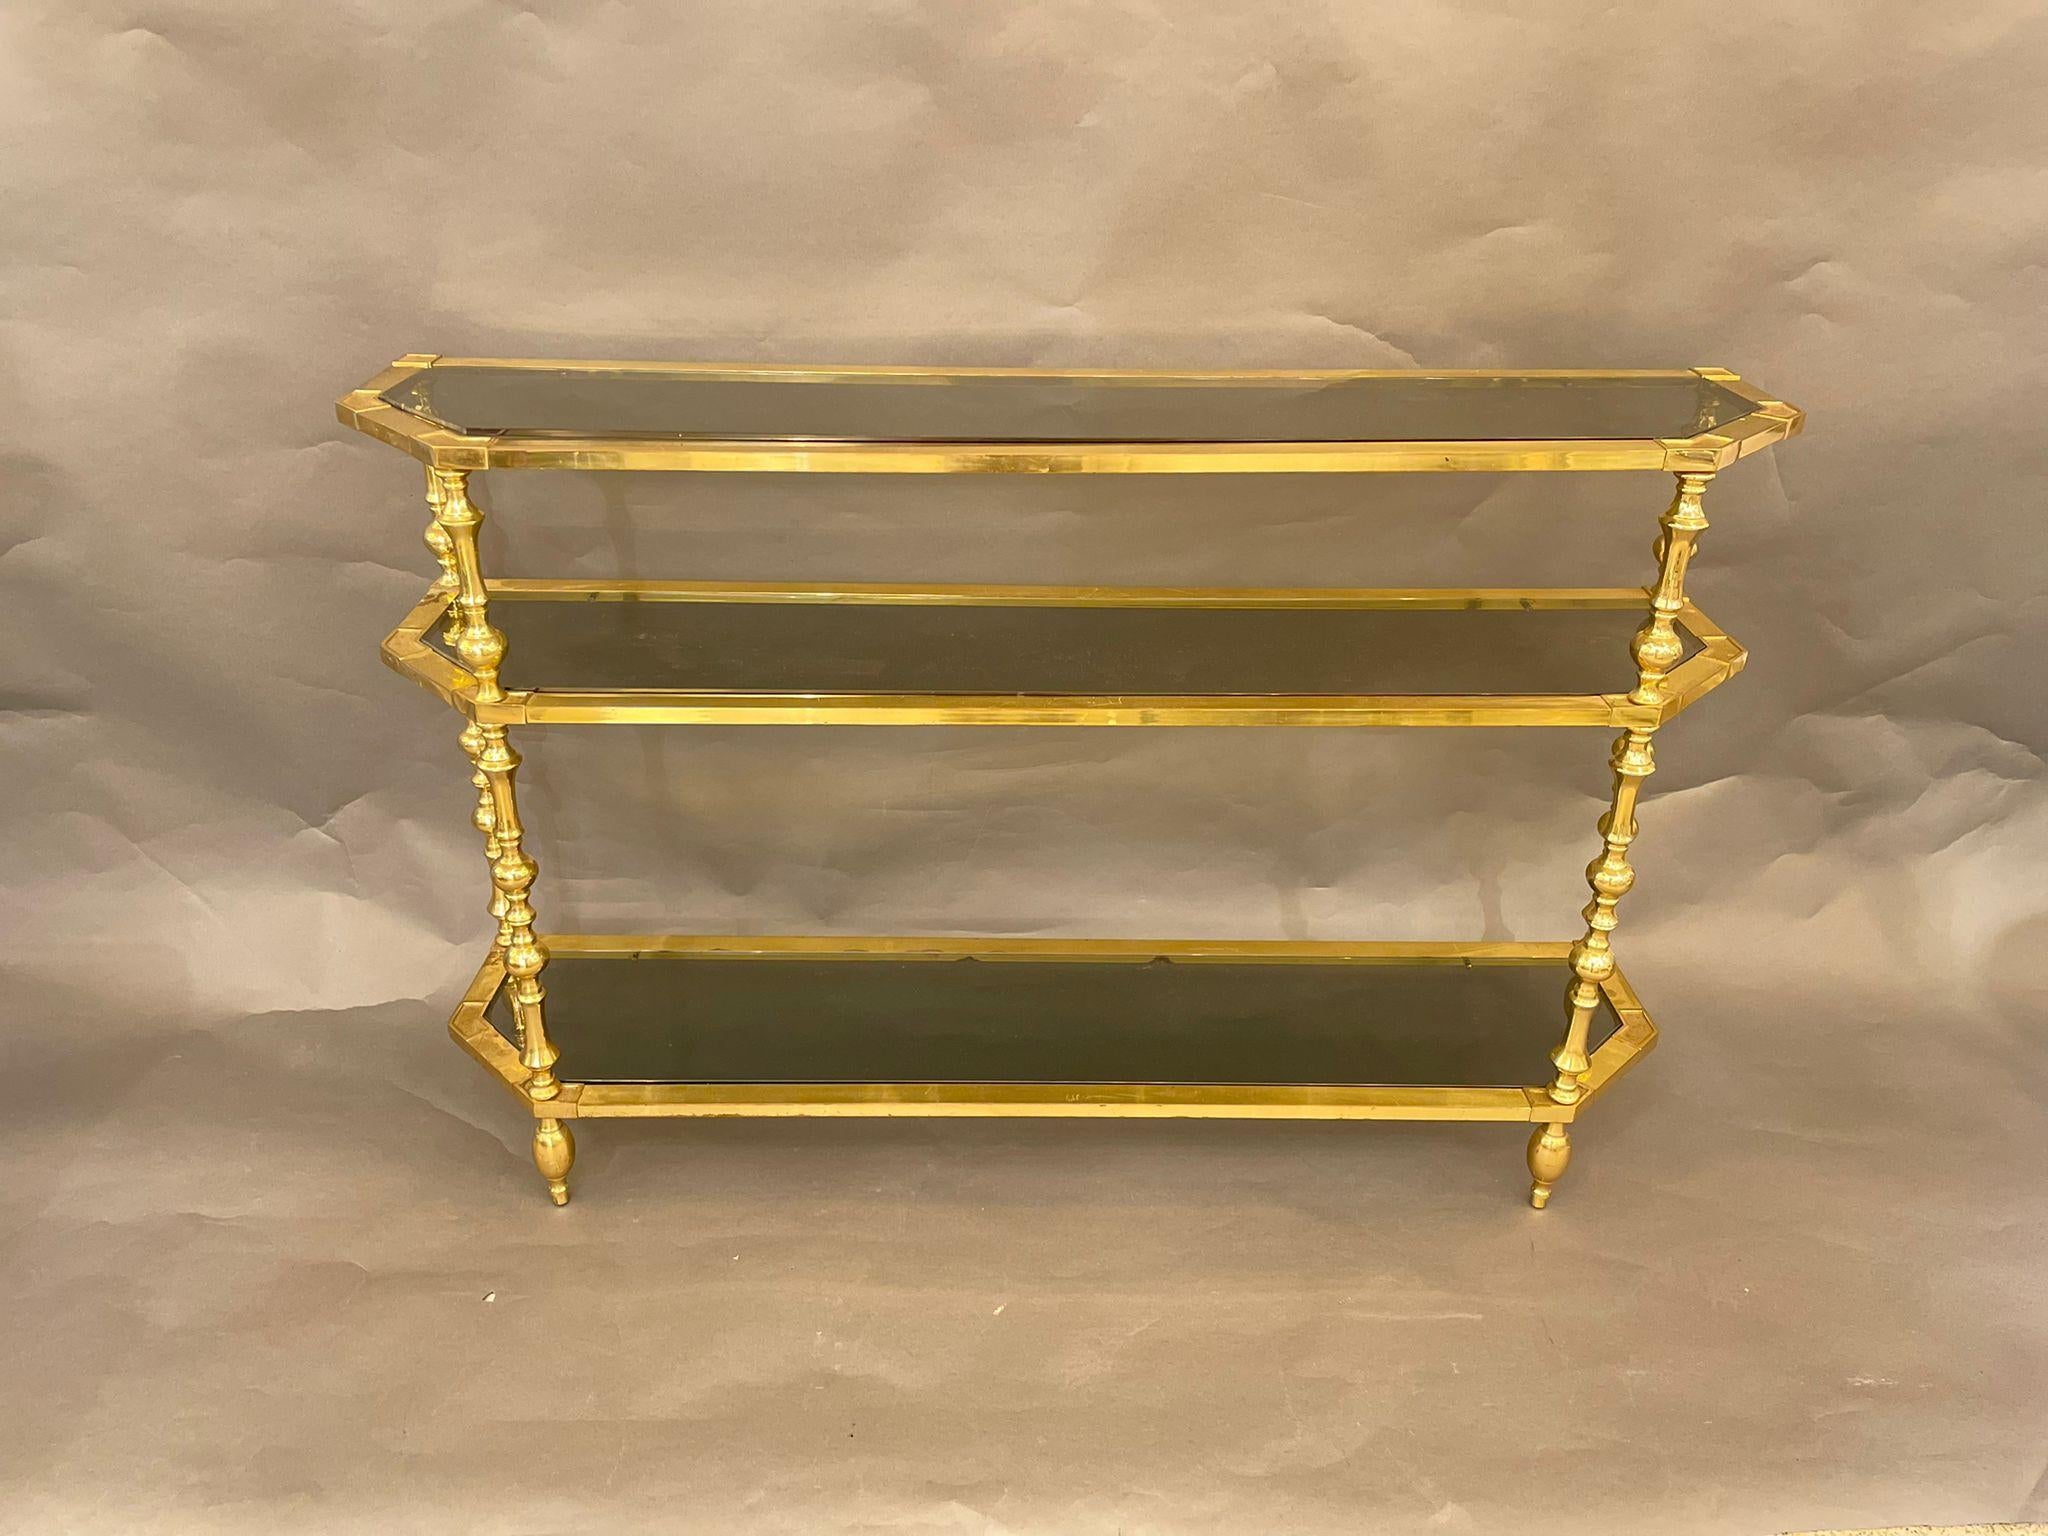 Une console/étagère italienne vintage en laiton du milieu du 20e siècle, avec des étagères en verre fumé. Cette étagère élégante présente une structure en laiton et trois niveaux d'étagères en verre fumé.